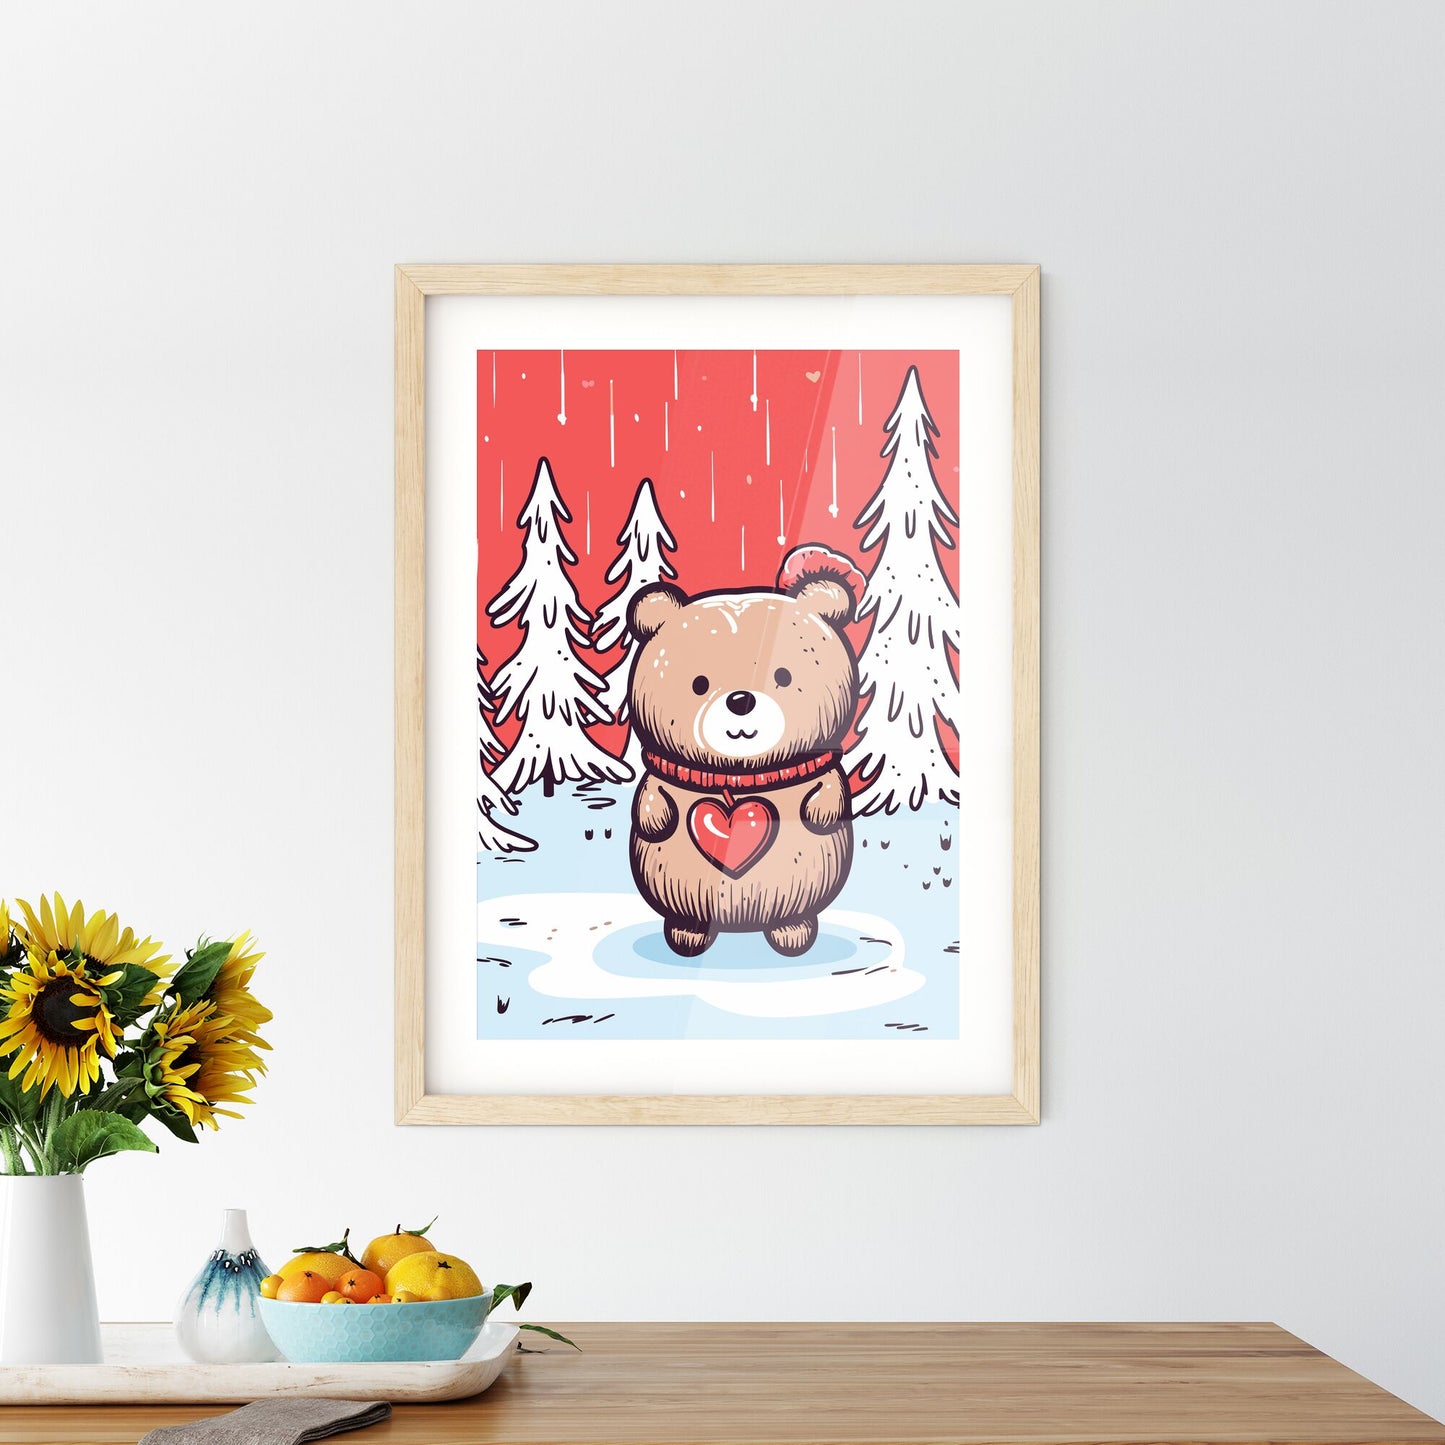 Merry Christmas Card With A Cute Bear Huging A Heart - A Cartoon Of A Teddy Bear Holding A Heart Default Title